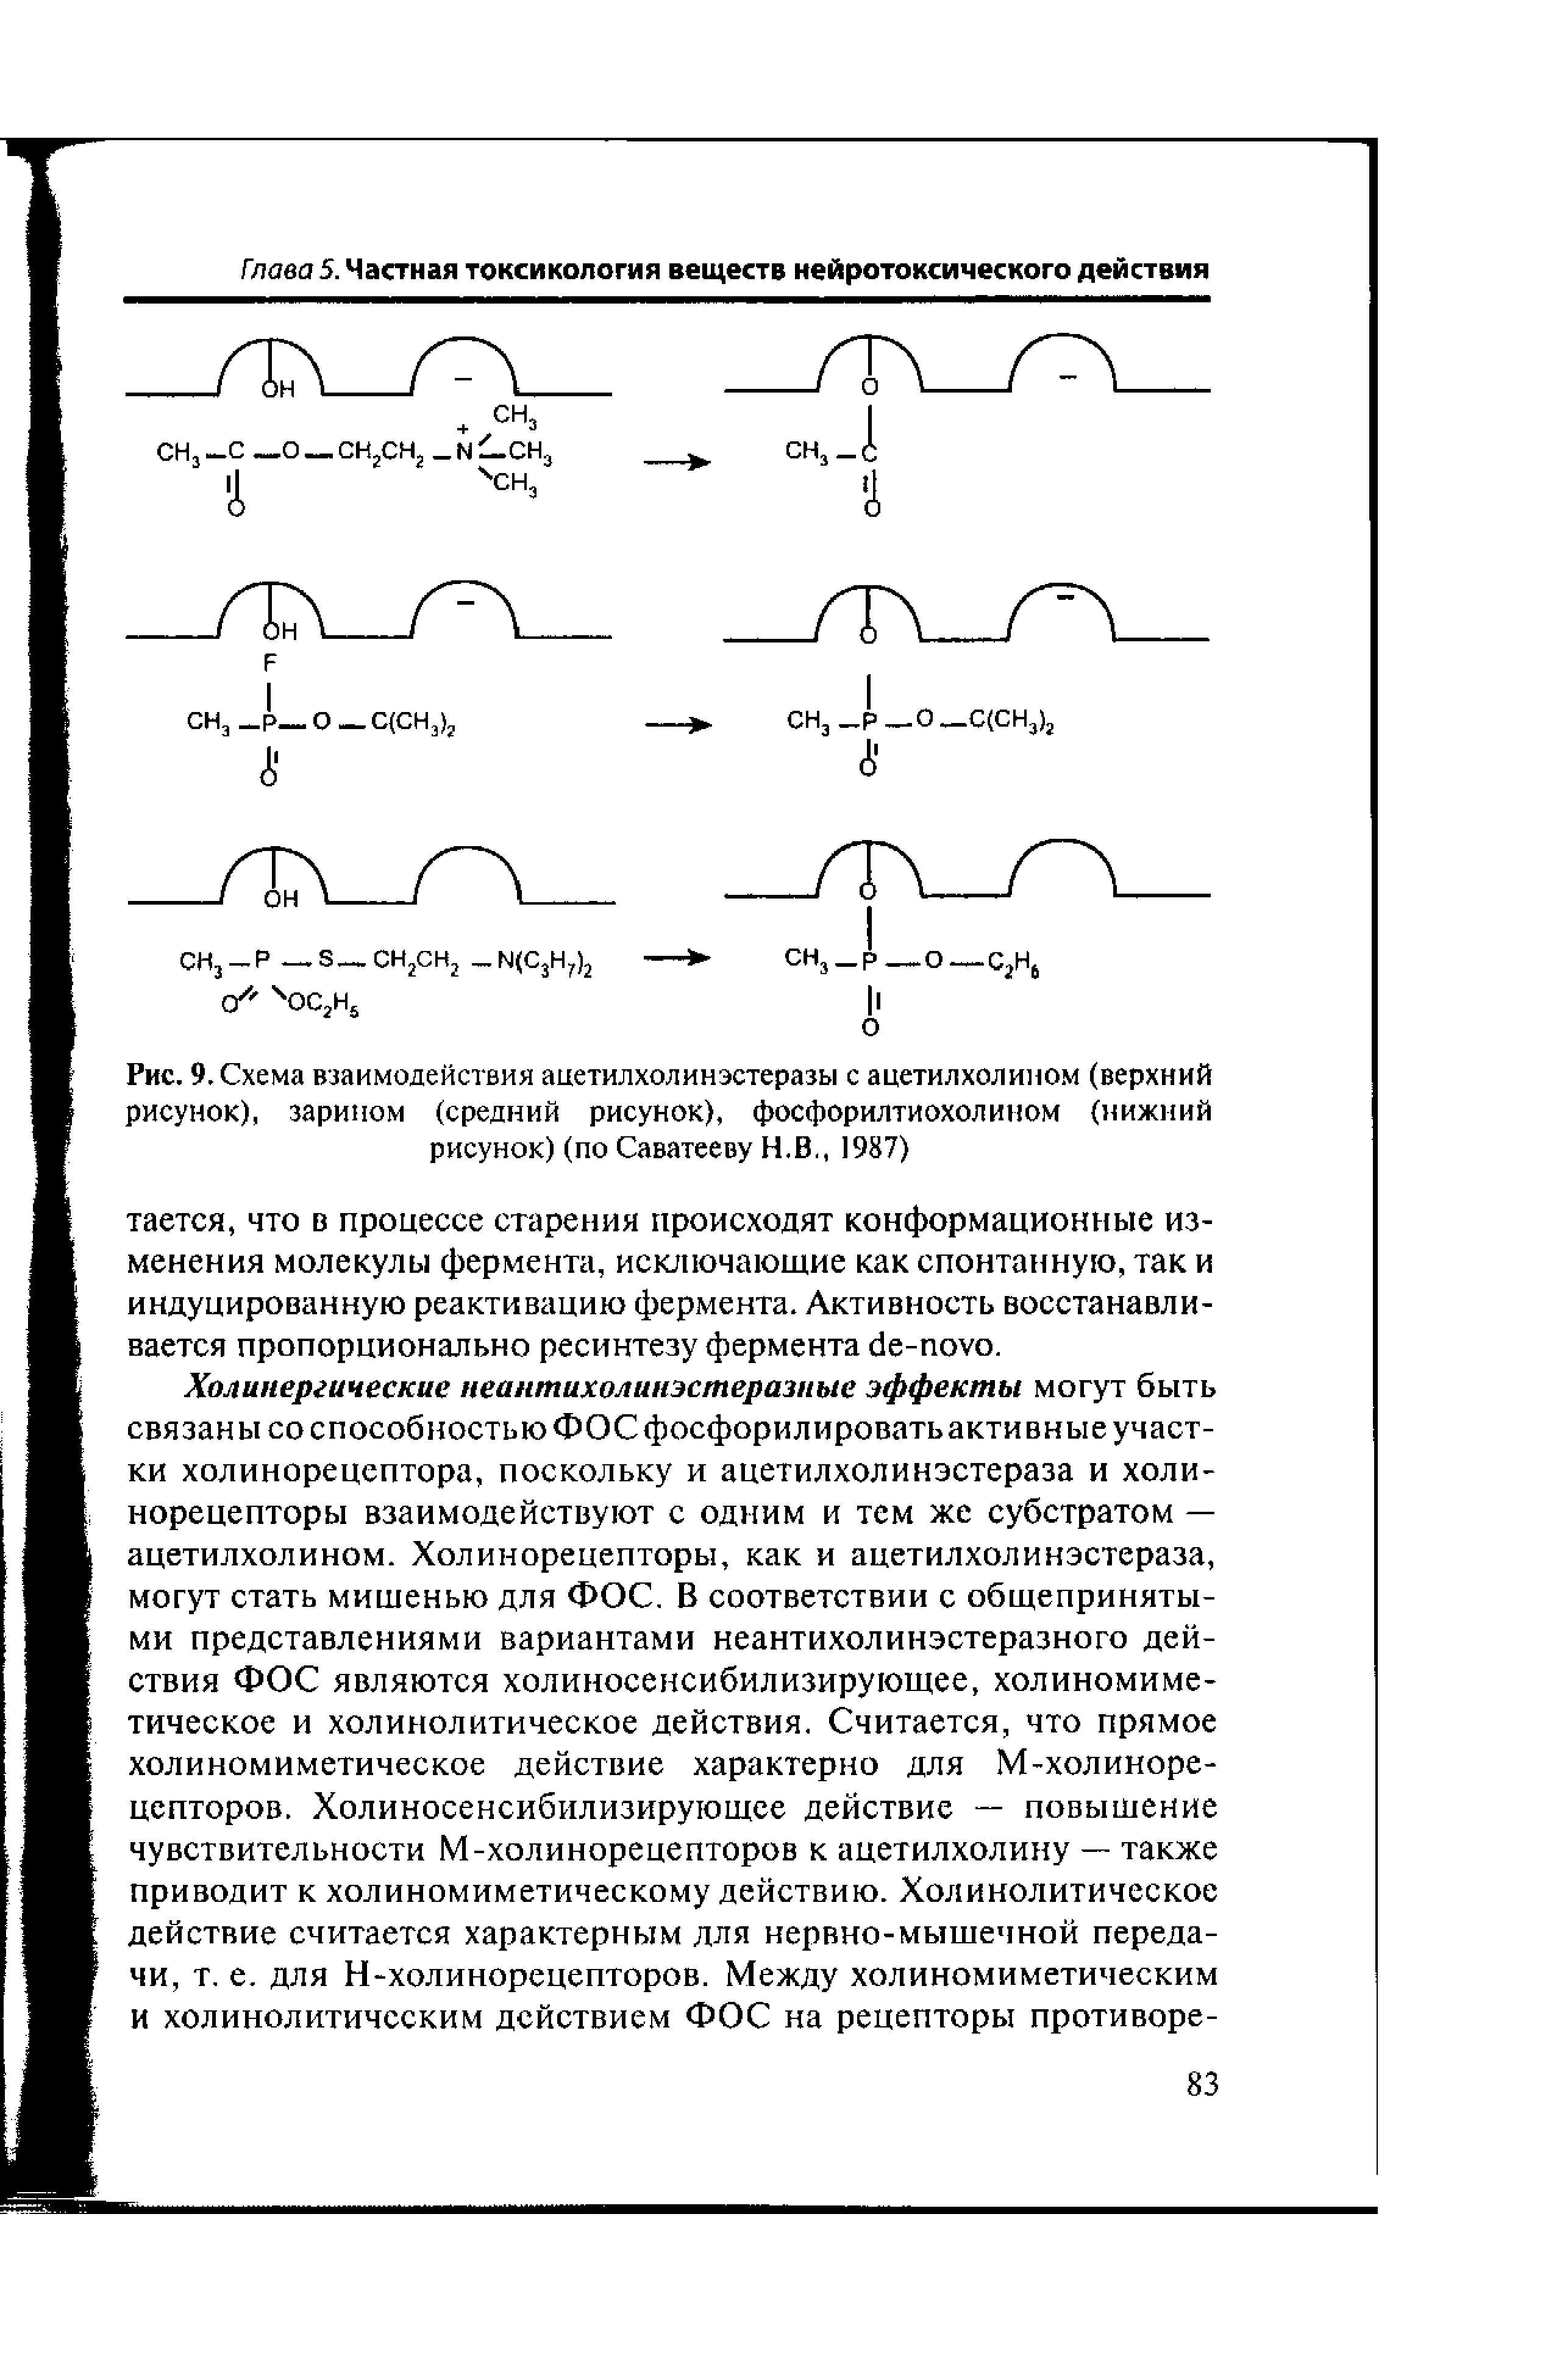 Рис. 9. Схема взаимодействия ацетилхолин эстеразы с ацетилхолином (верхний рисунок), зарином (средний рисунок), фосфорилтиохолином (нижний рисунок) (по Саватееву Н.В., 1987)...